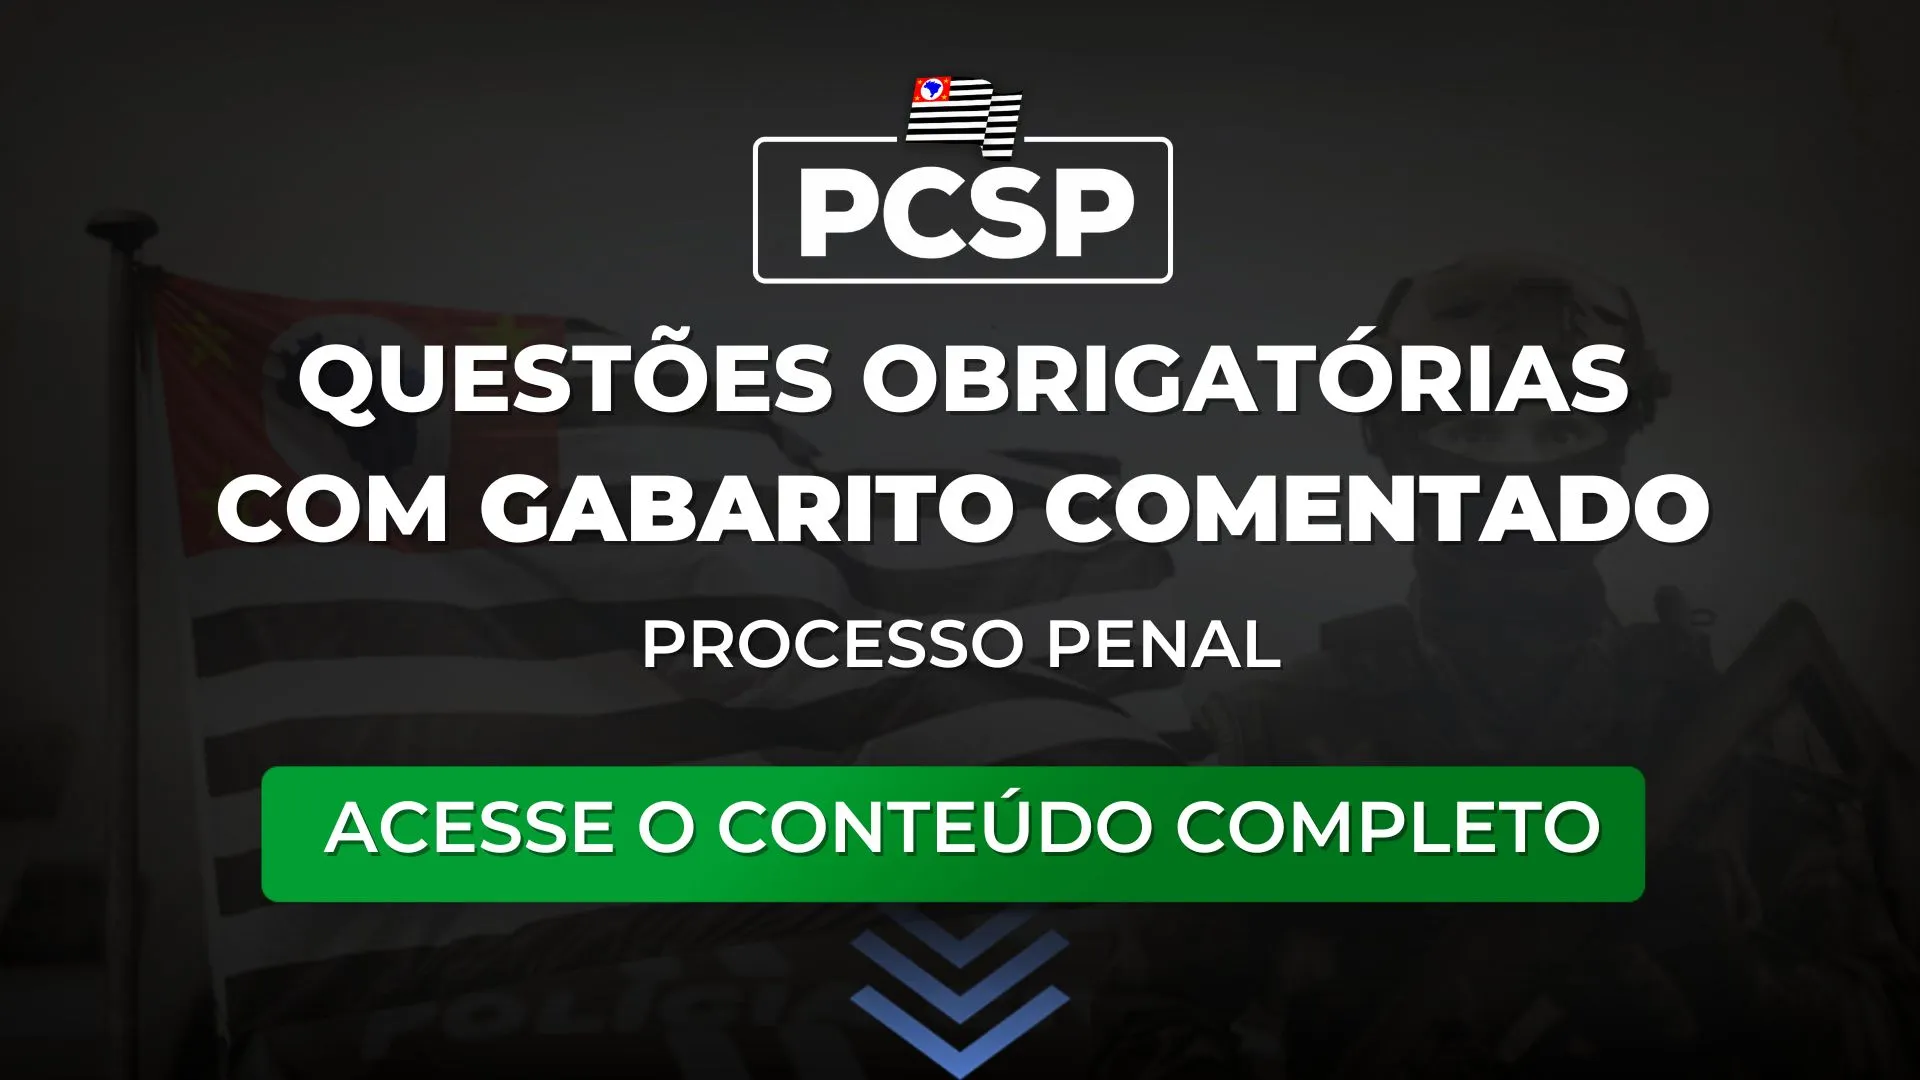 PCSP 23: Questões obrigatórias com gabarito comentado de Processo Penal para o concurso